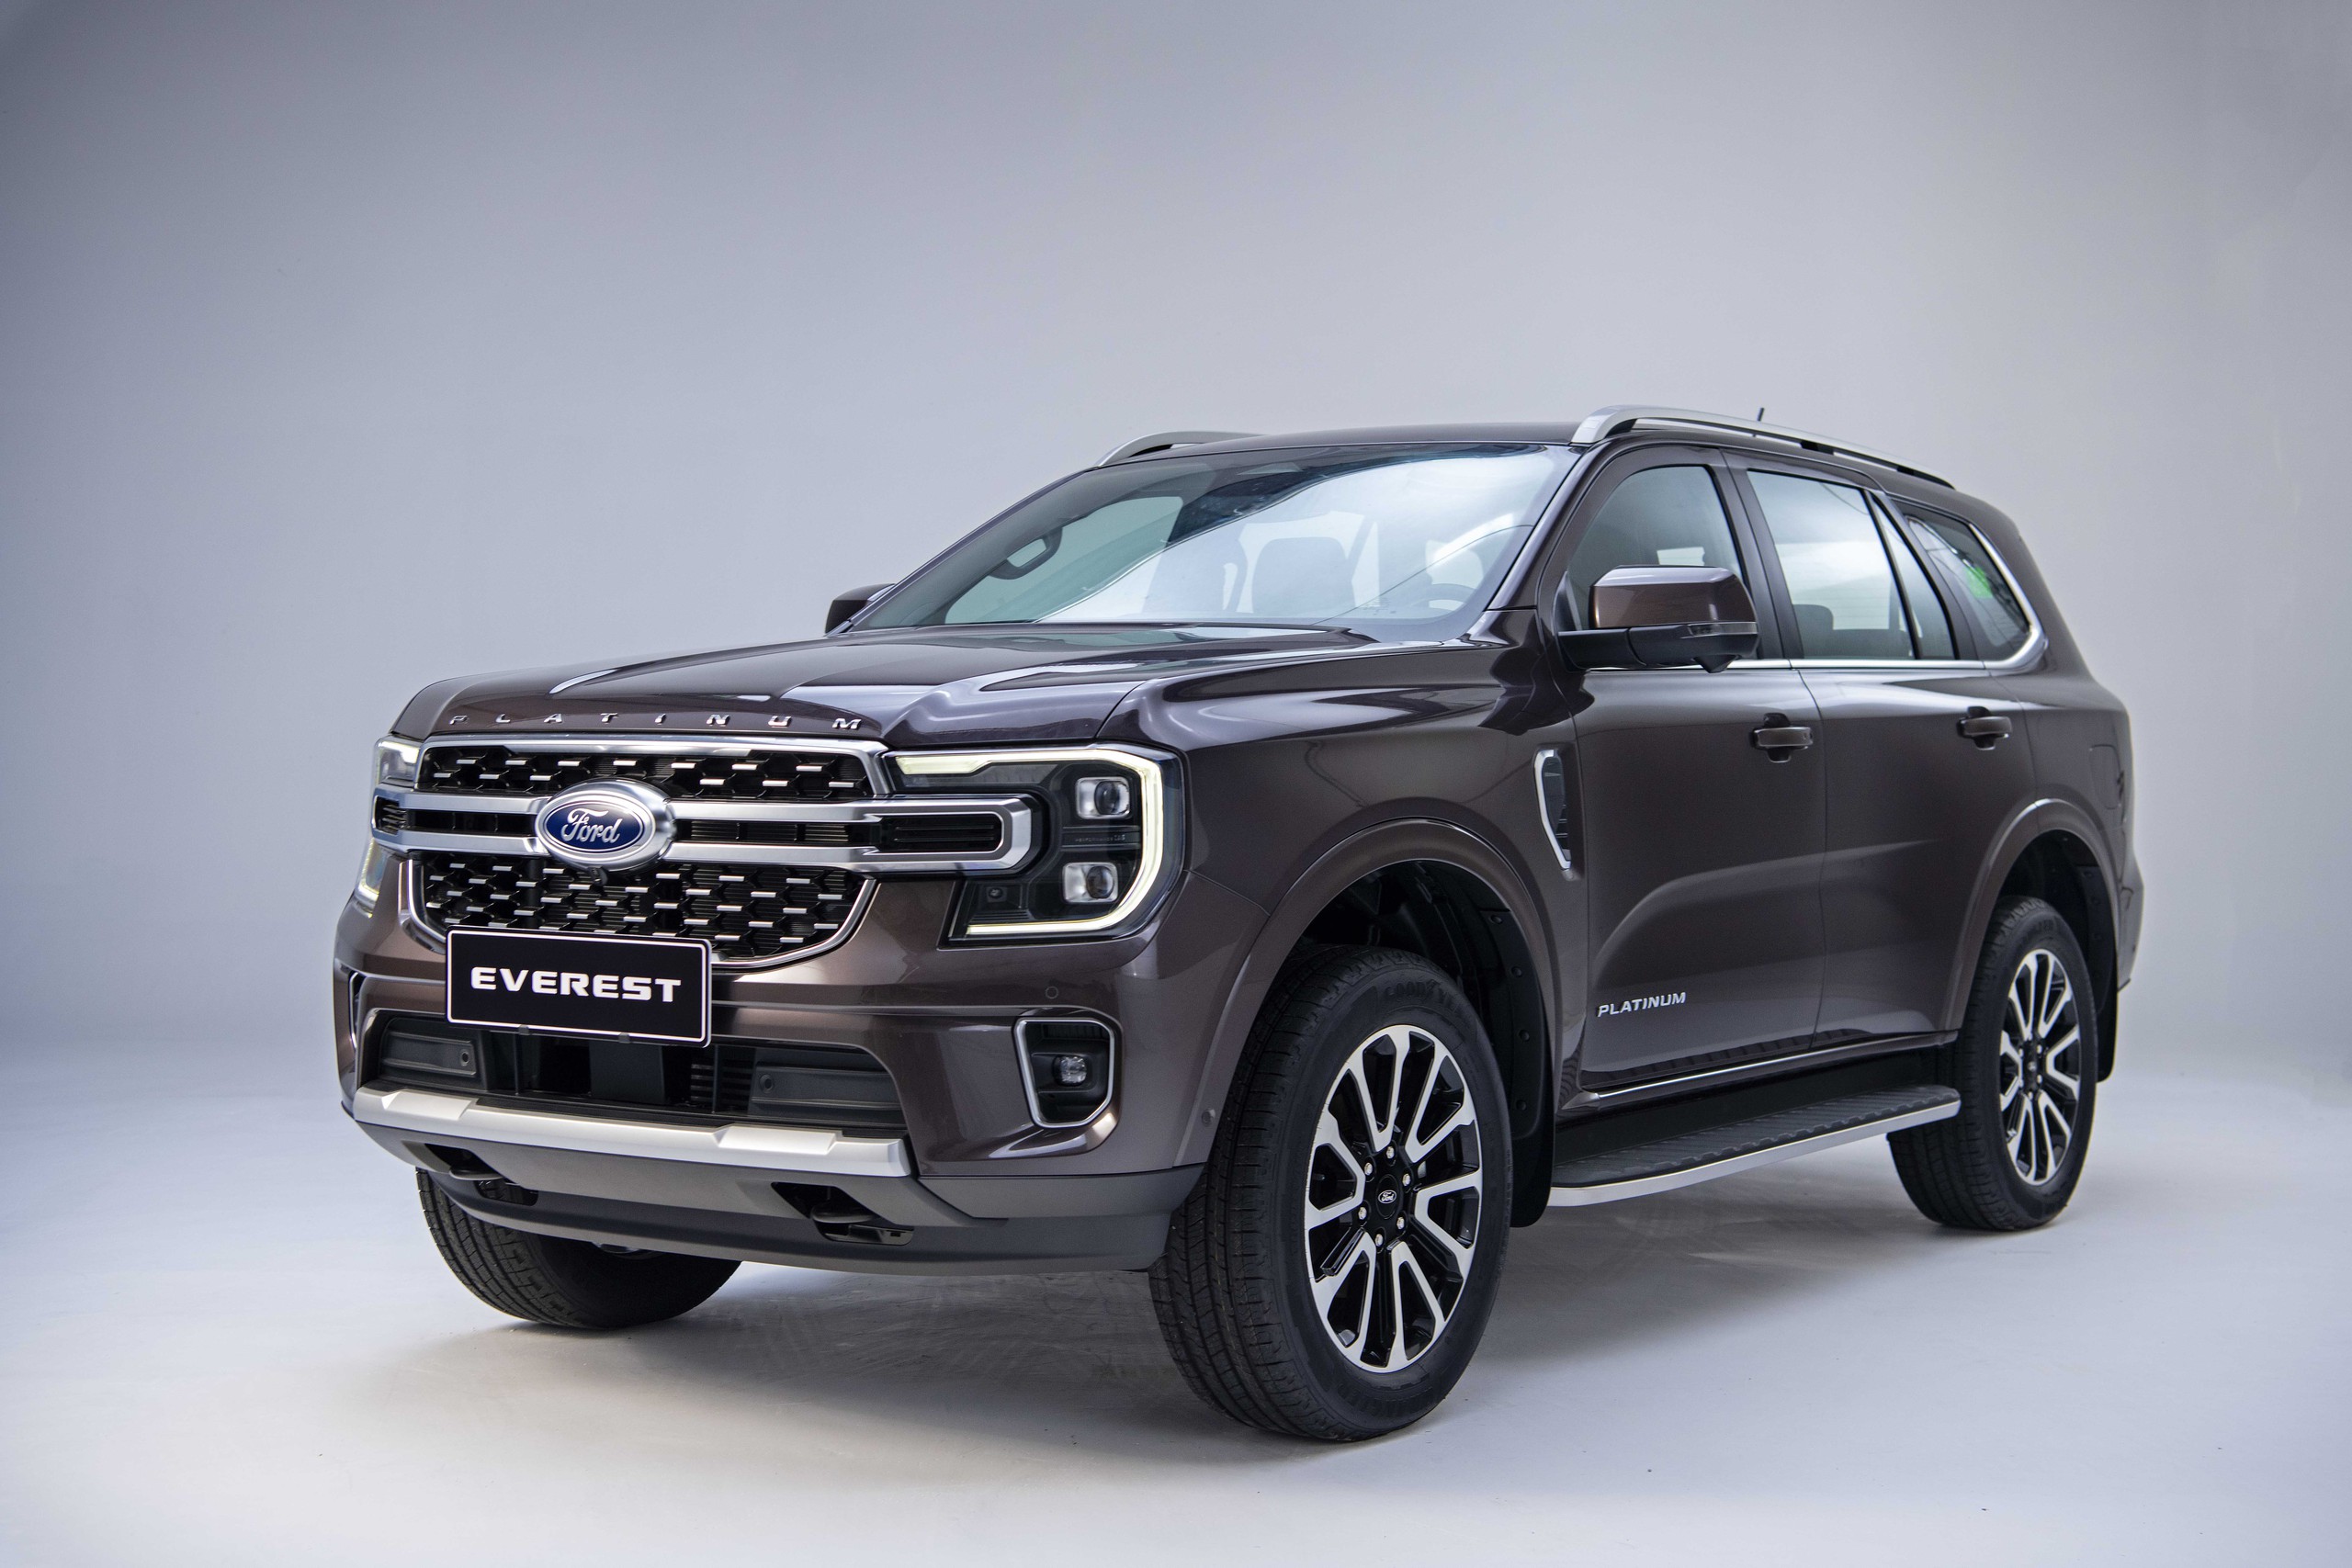 Công bố giá Ford Everest Platinum và Ranger Stormtrak: Từ 1,039 tỷ đồng, thiết kế mới cho khách hàng Việt